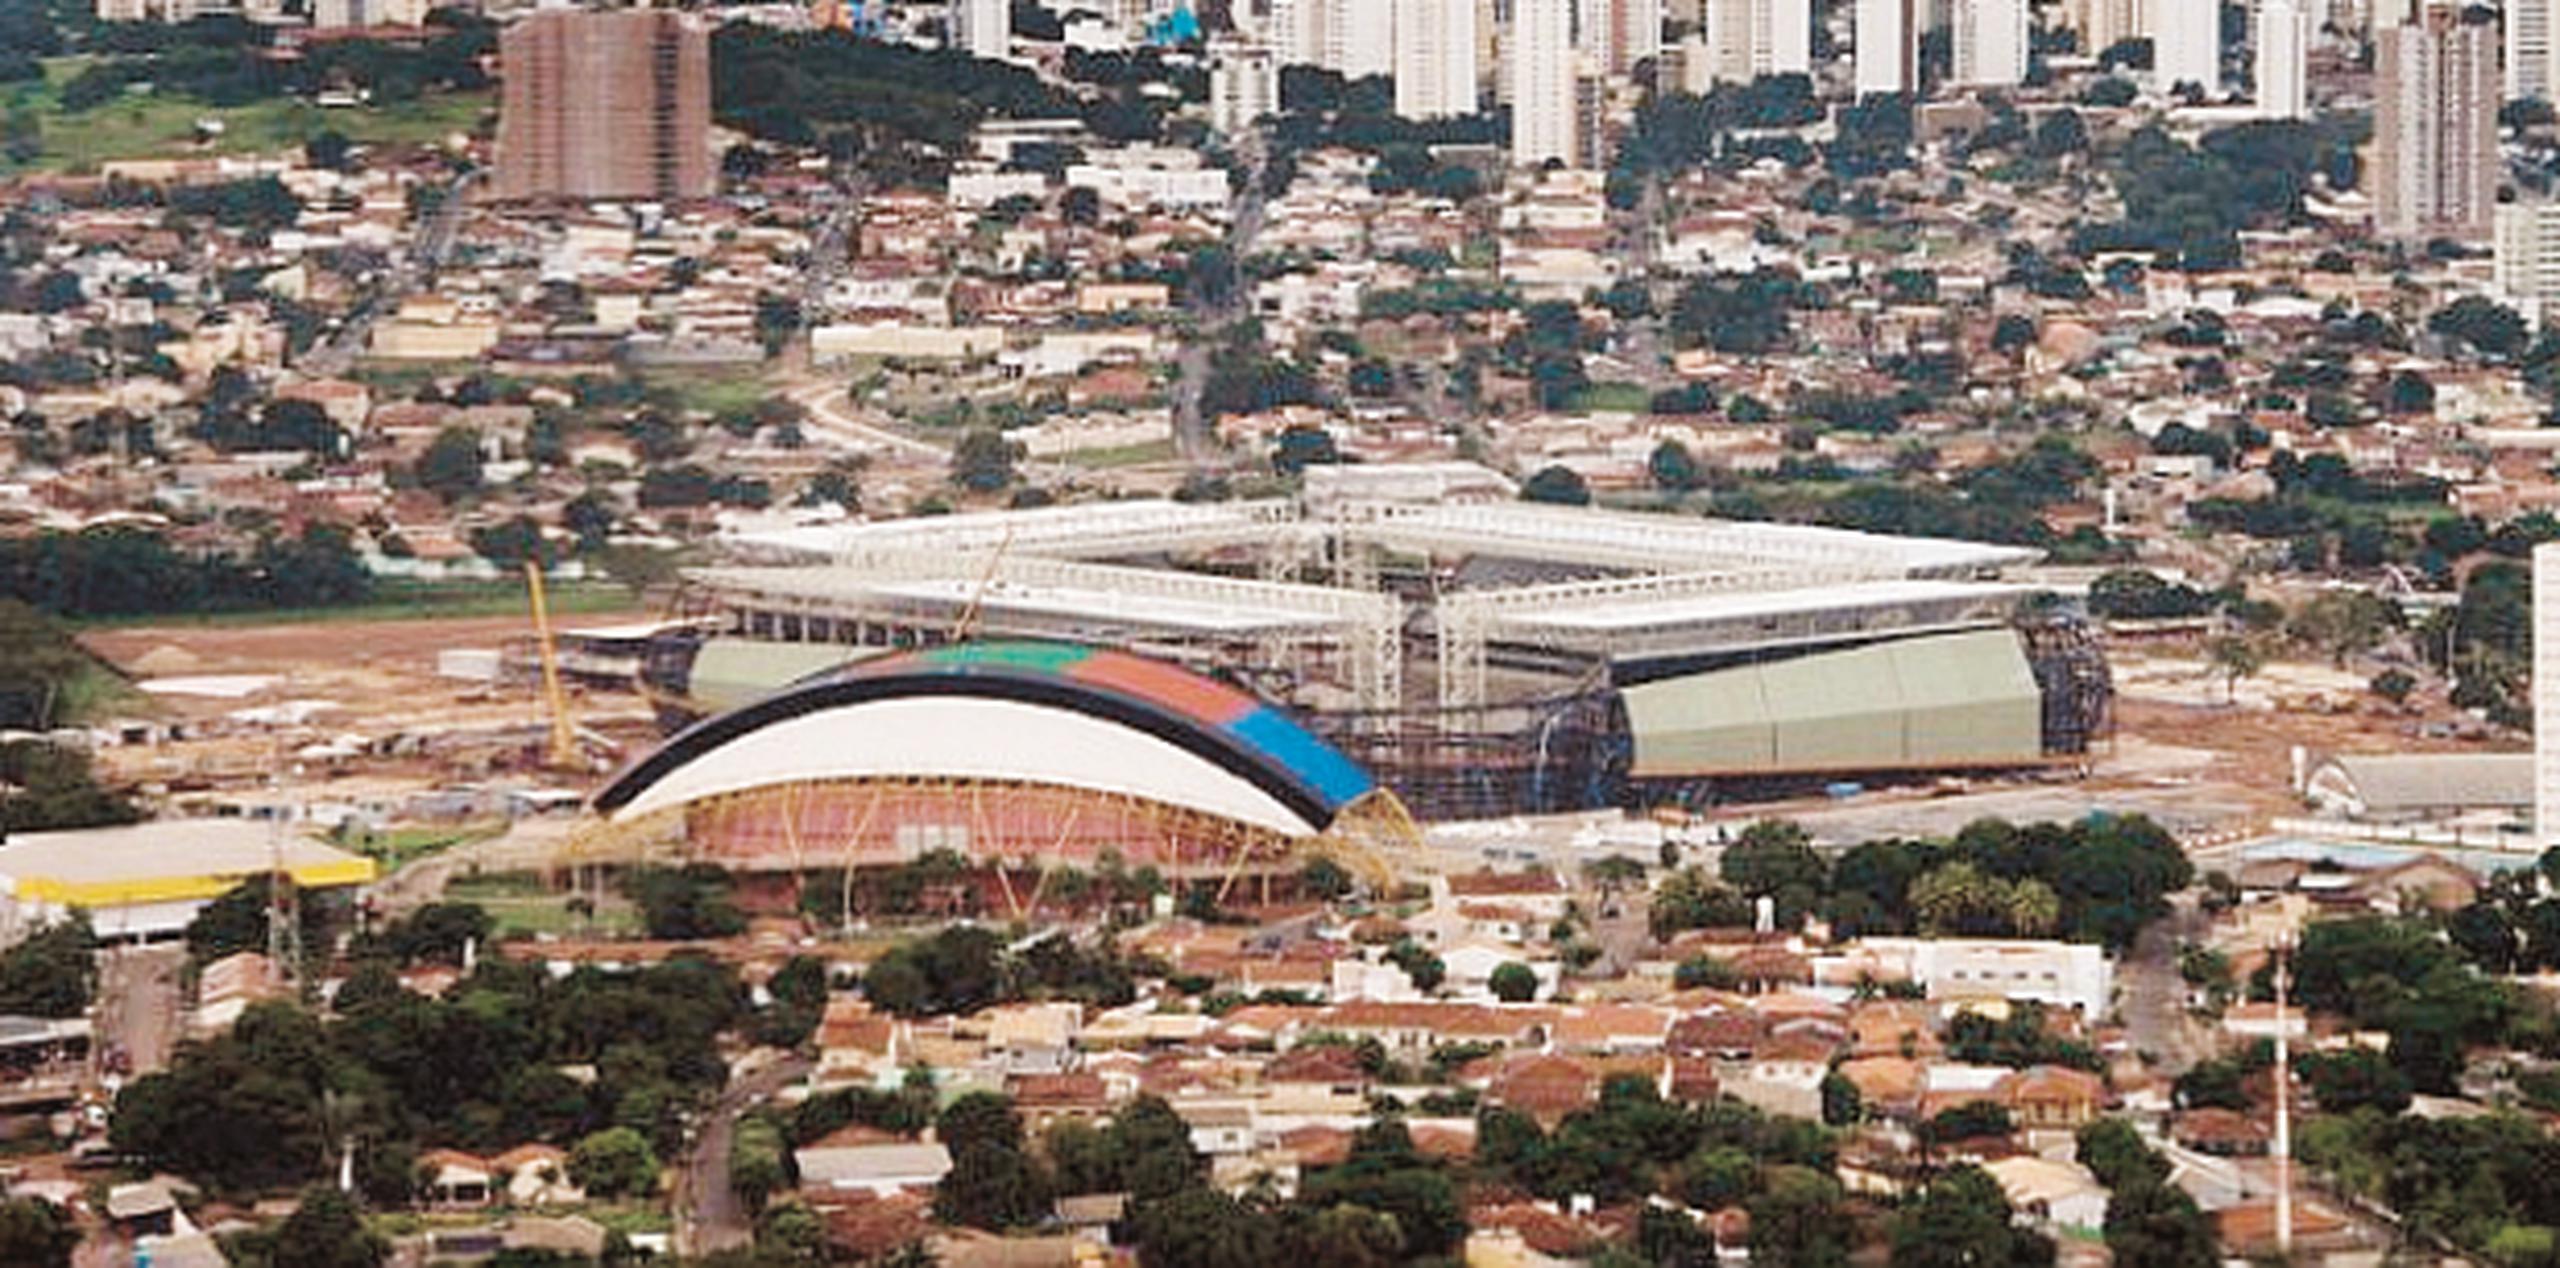 La Arena Pantanal en Cuiabá (durante su construcción) fue clausurada en enero para realizar reparaciones de emergencia debido a fallas crazas de construcción. (Archivo)